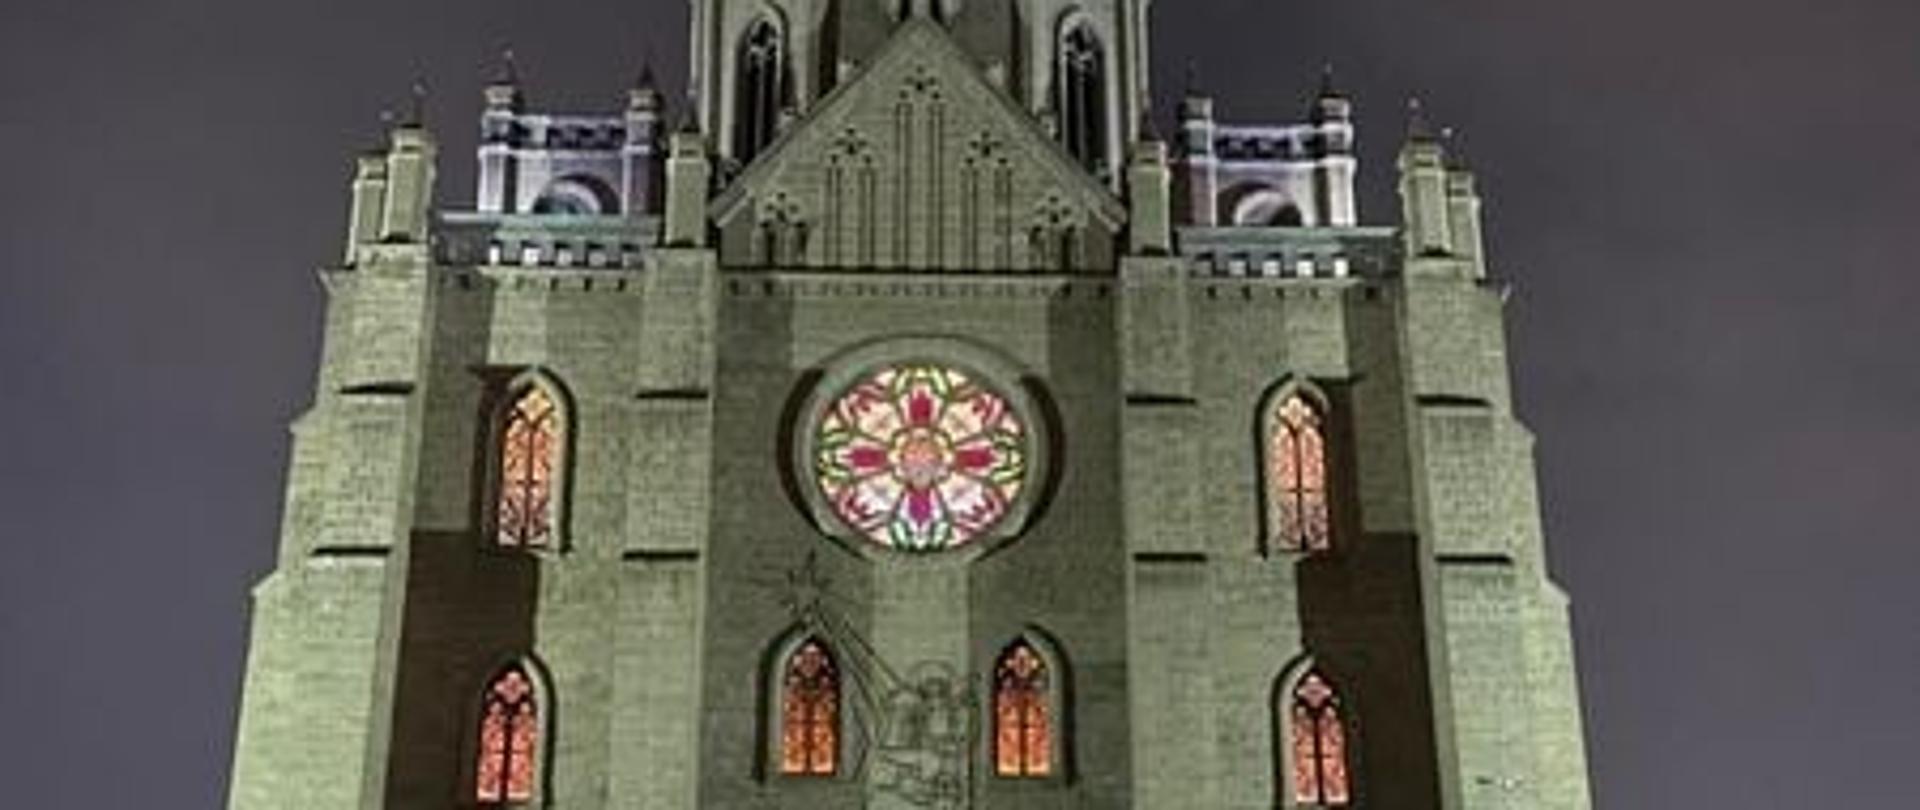 Katedra Najświętszego Serca Pana Jezusa w Taszkencie